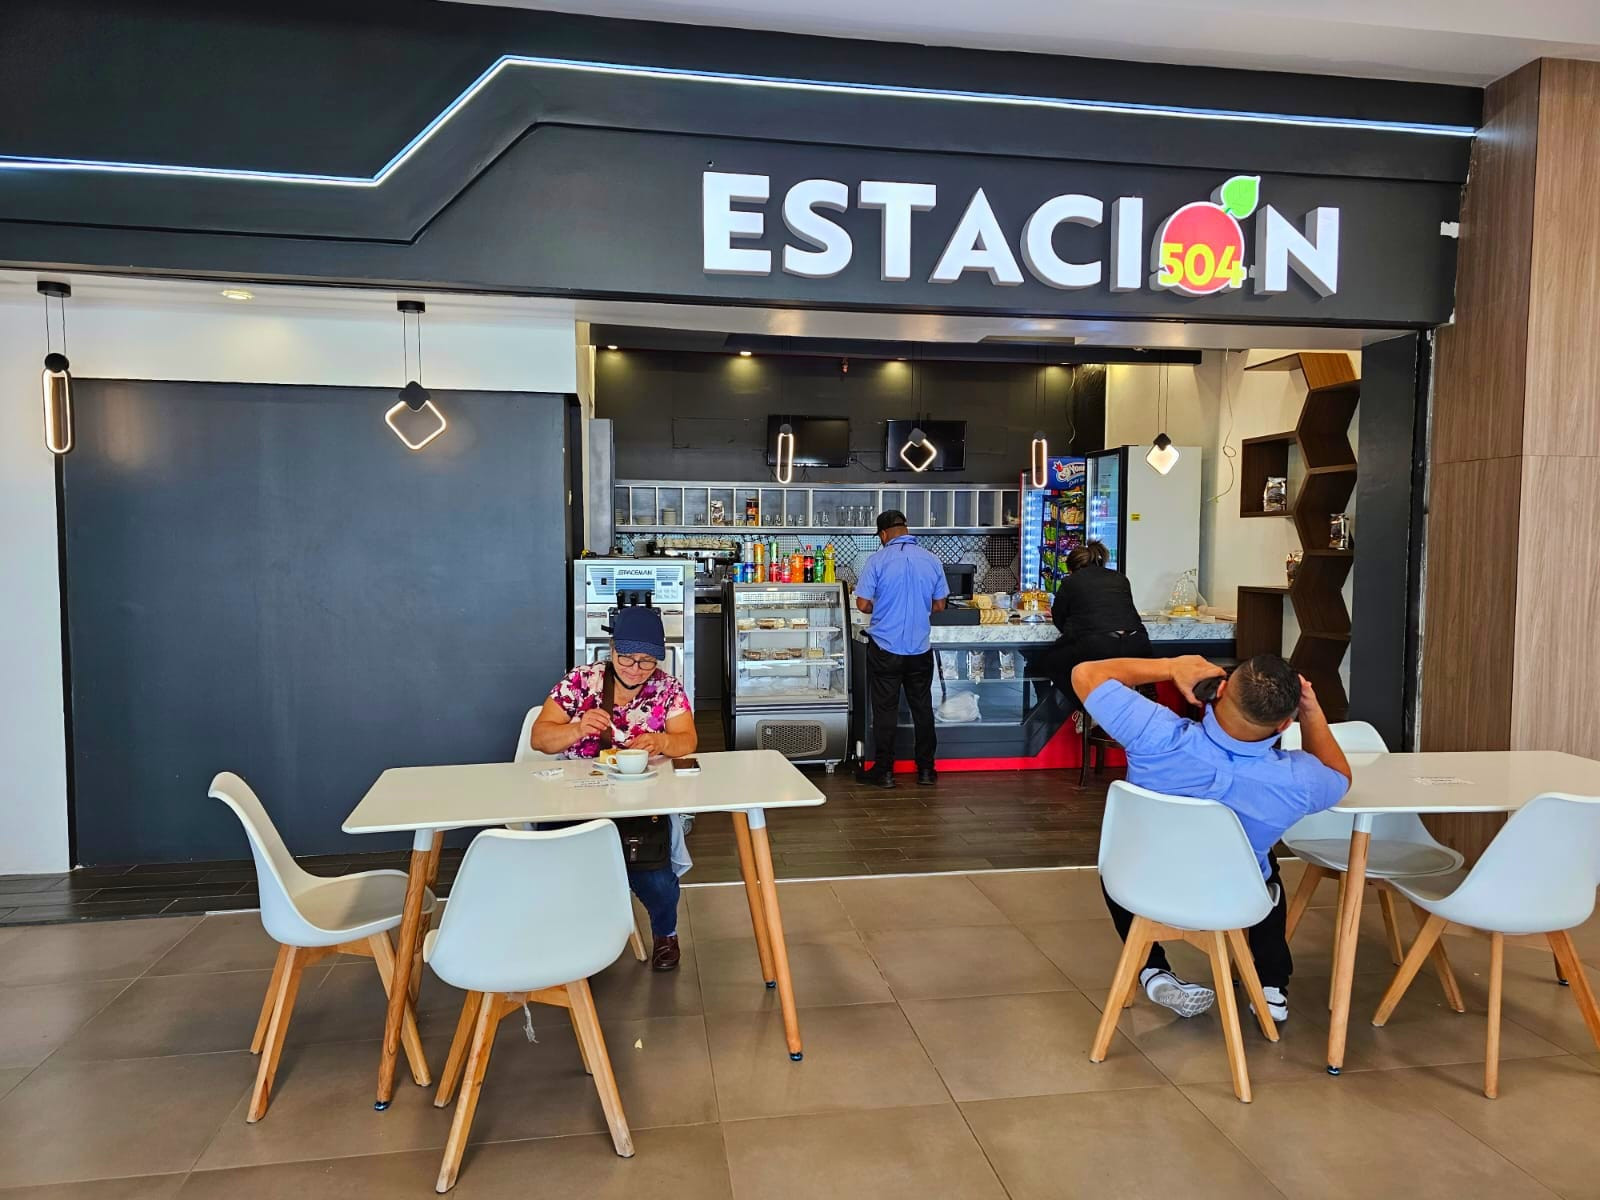 Servicios-Aeropuerto-Comayagua-Honduras-Palmerola-Estación 504, el restaurante que enamora los paladares de los pasajeros